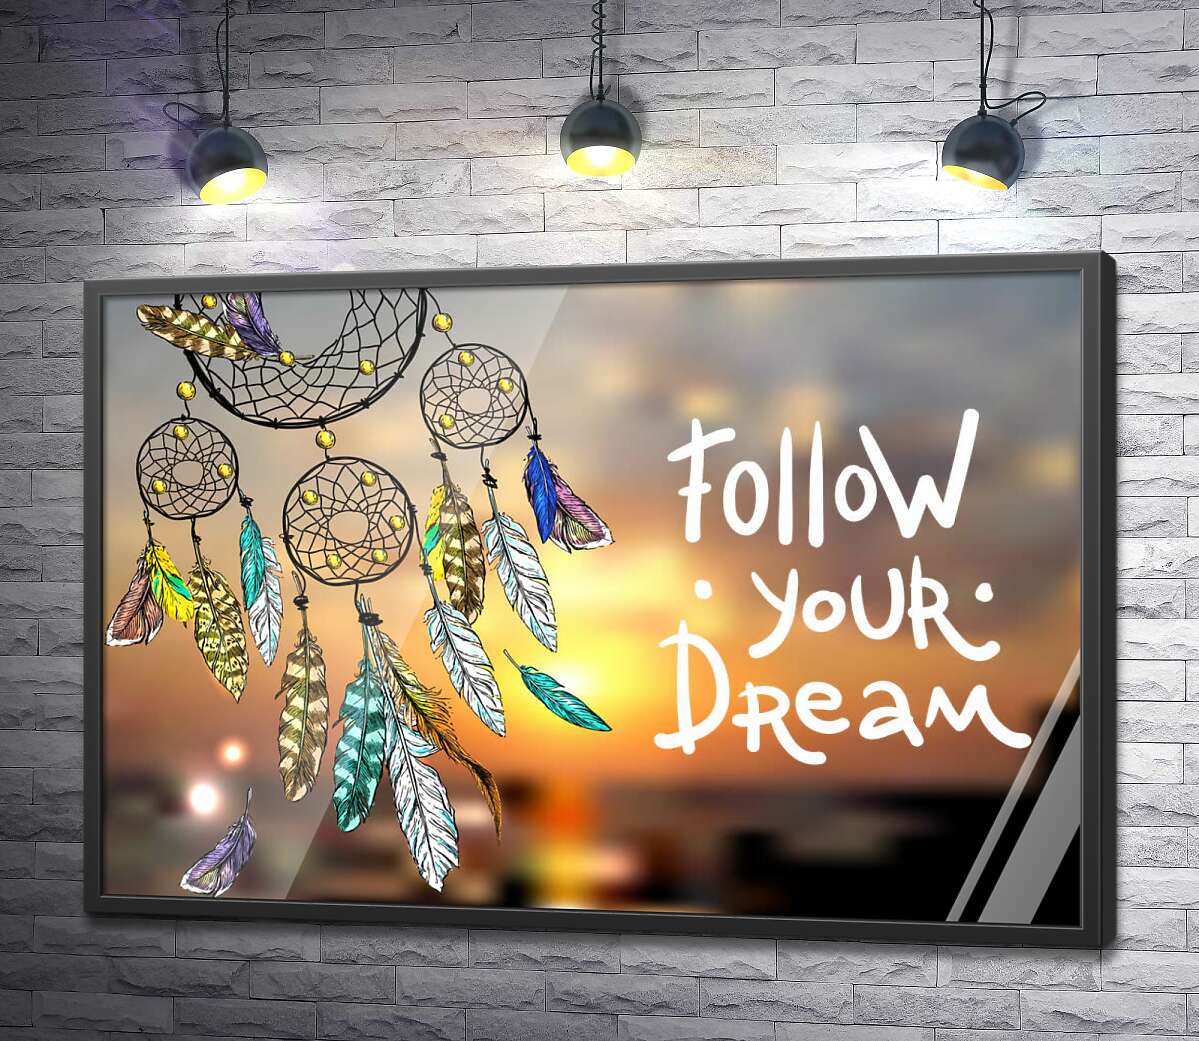 постер Індіанський ловець снів поряд з фразою "follow your dream"